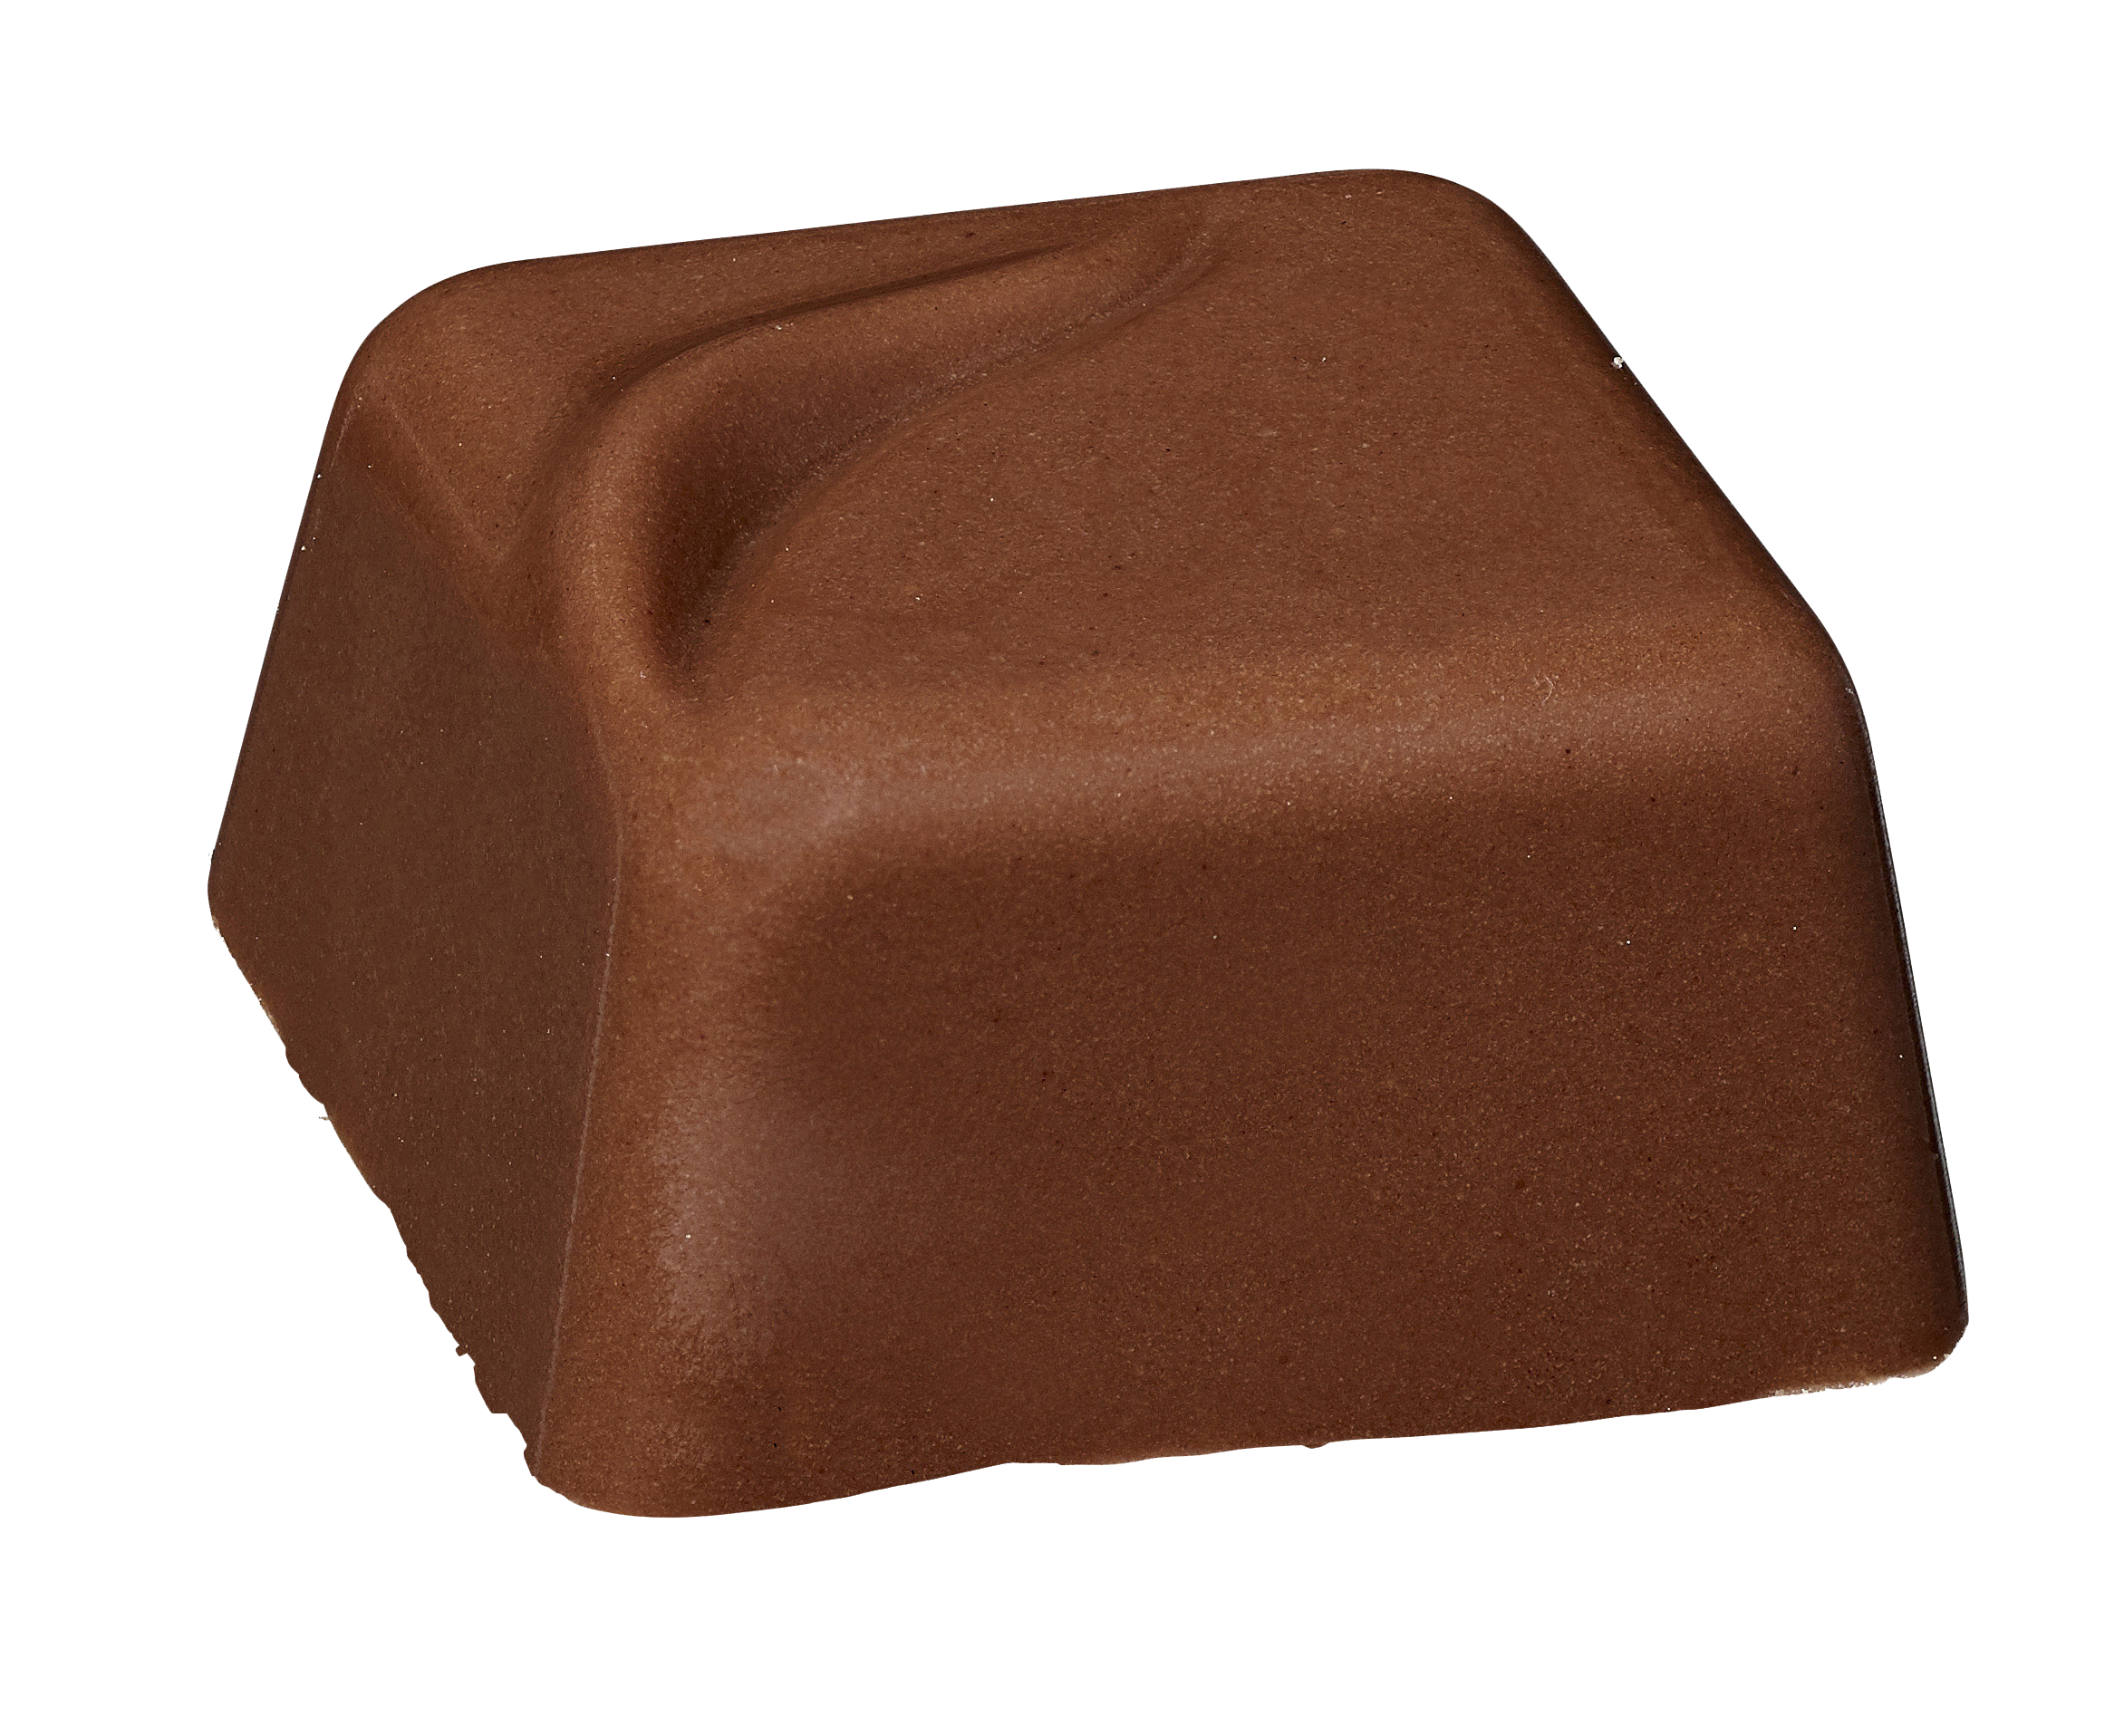 Belledonne Pecannoot praliné(omhuld met melkchocolade) bio 1kg - 000653